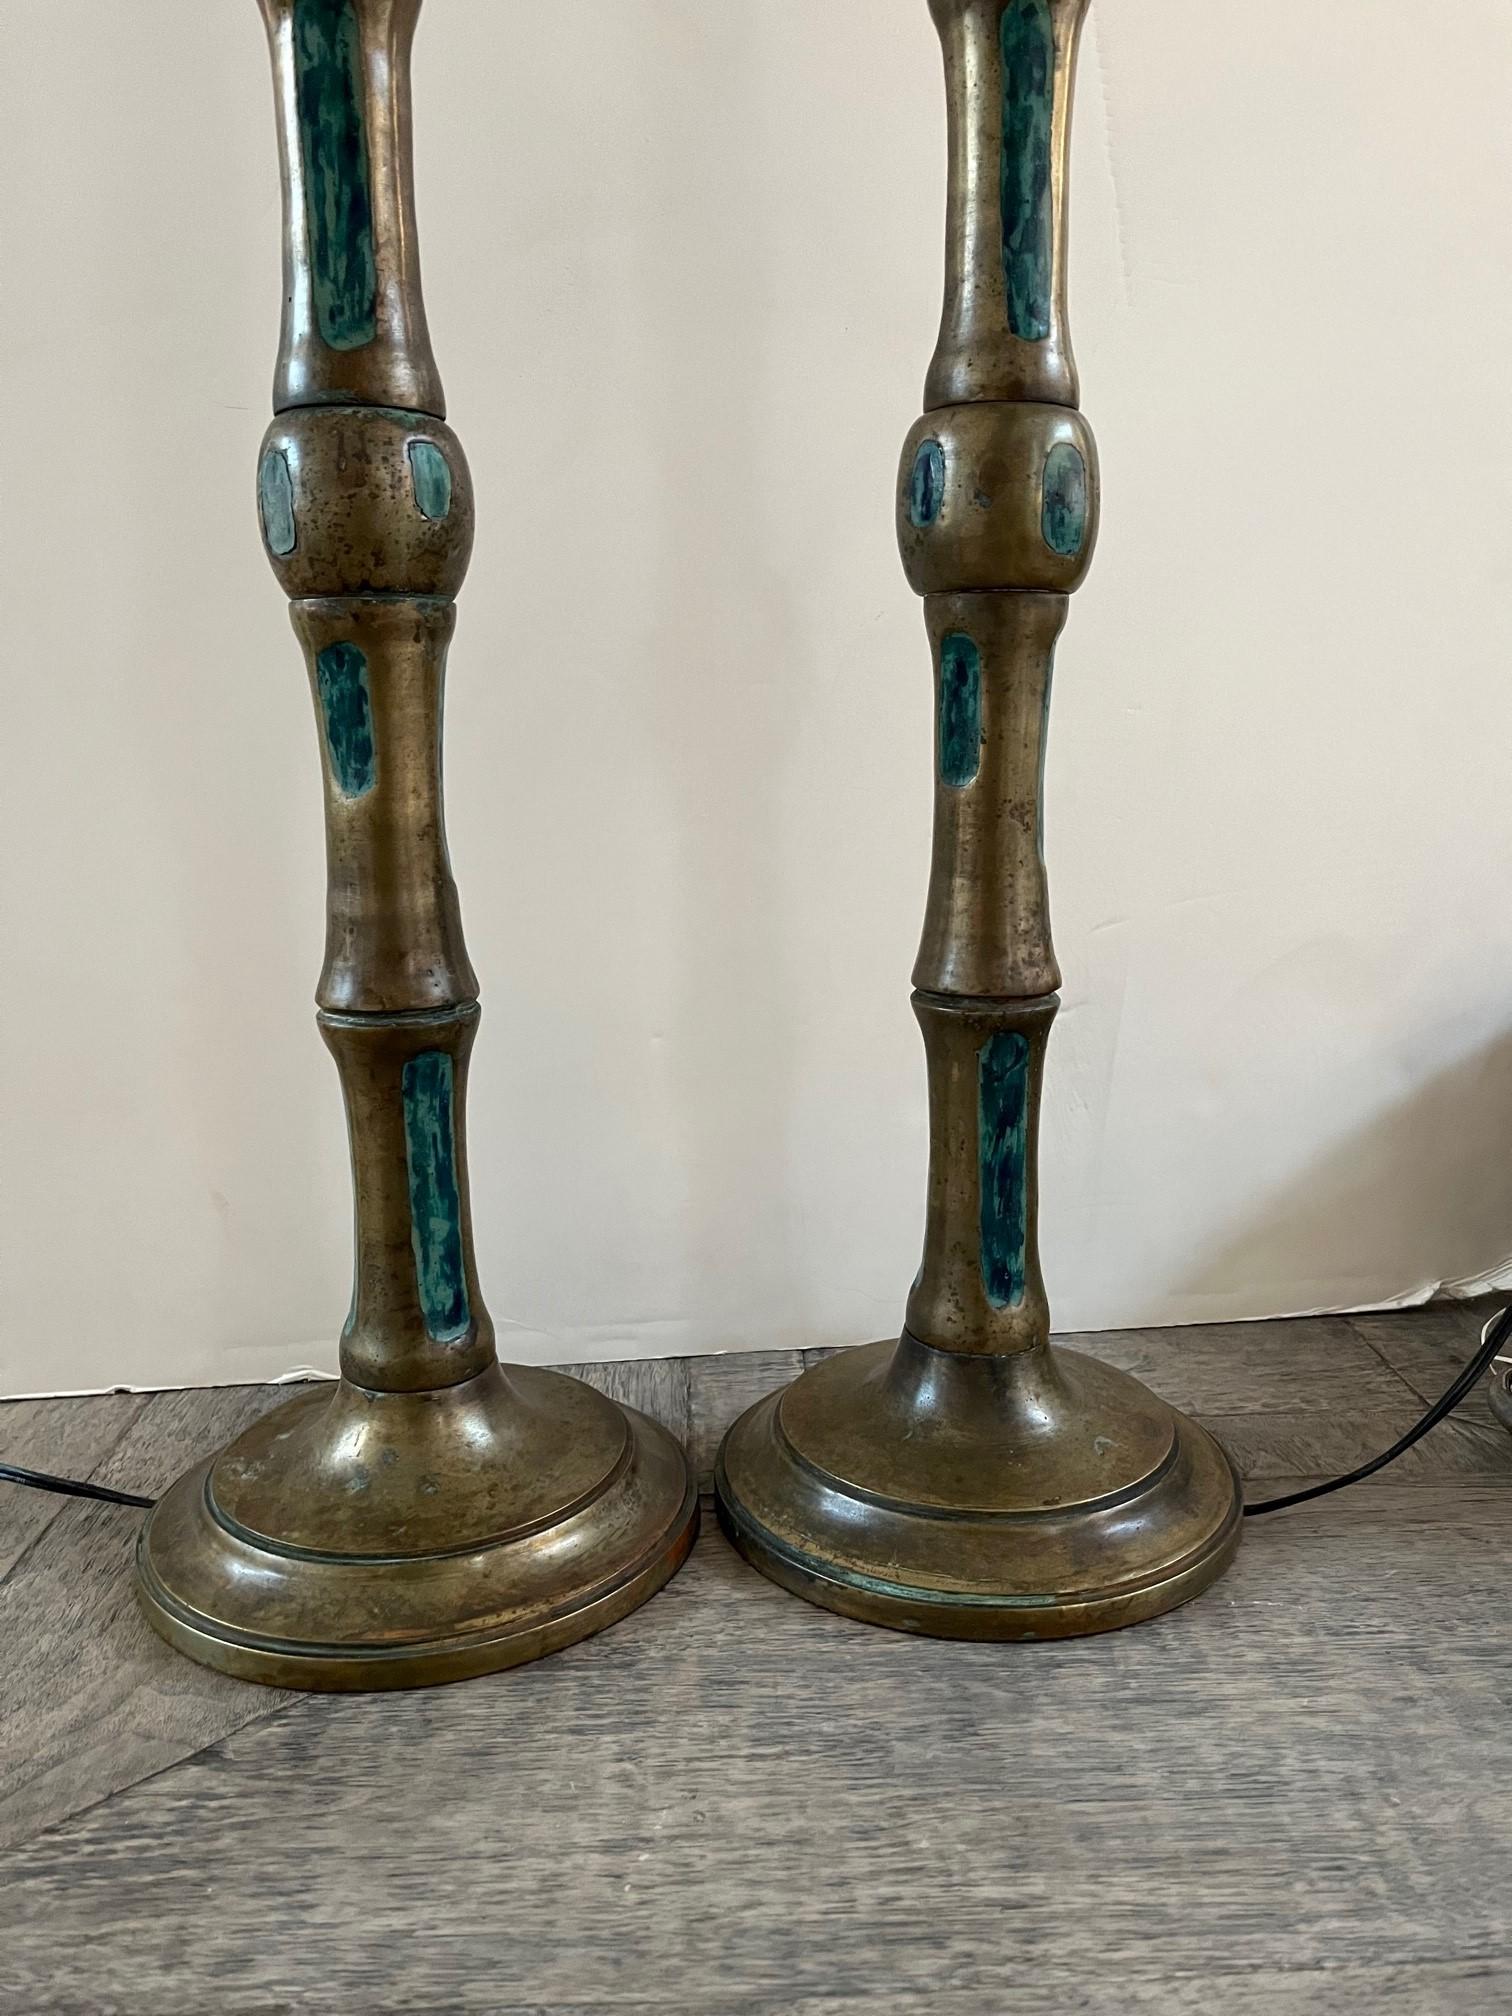 Paar Vintage-Bronze-Tischlampen von Pepe Mendoza, mit Faux Bamboo Stalk Motiv in Bronze, mit emaillierten Türkis Keramik eingelegt, umfasst zwei passende Seidenschirme entworfen,
Im Stil Mid-Century Modern, auf runden Sockeln Kennzeichnung umfassen